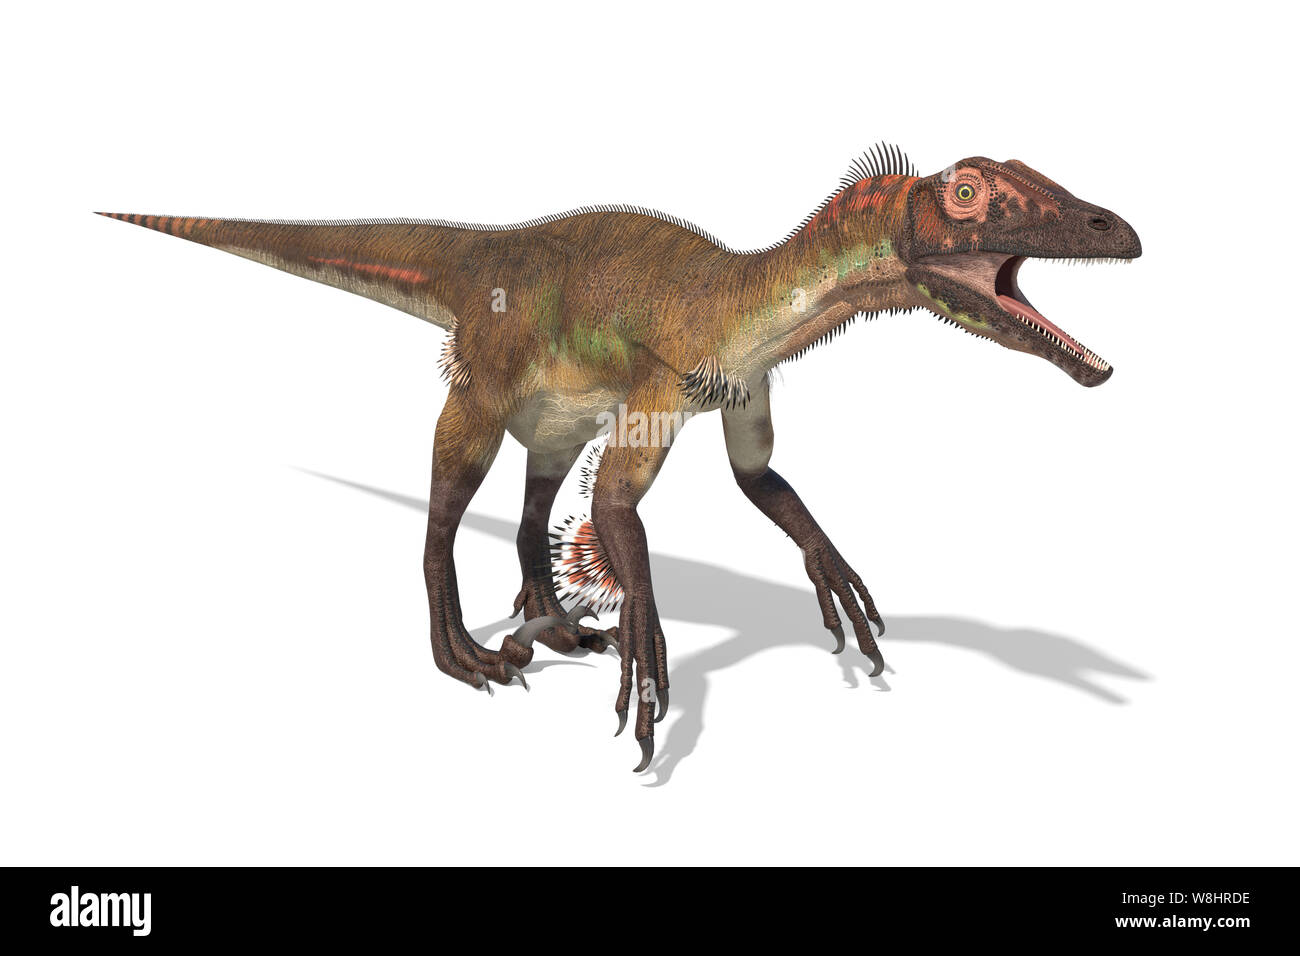 Dinosaures Utahraptor contre fond blanc, illustration. Ces dinosaures ont vécu au début du Crétacé, environ 126 millions d'années. Banque D'Images